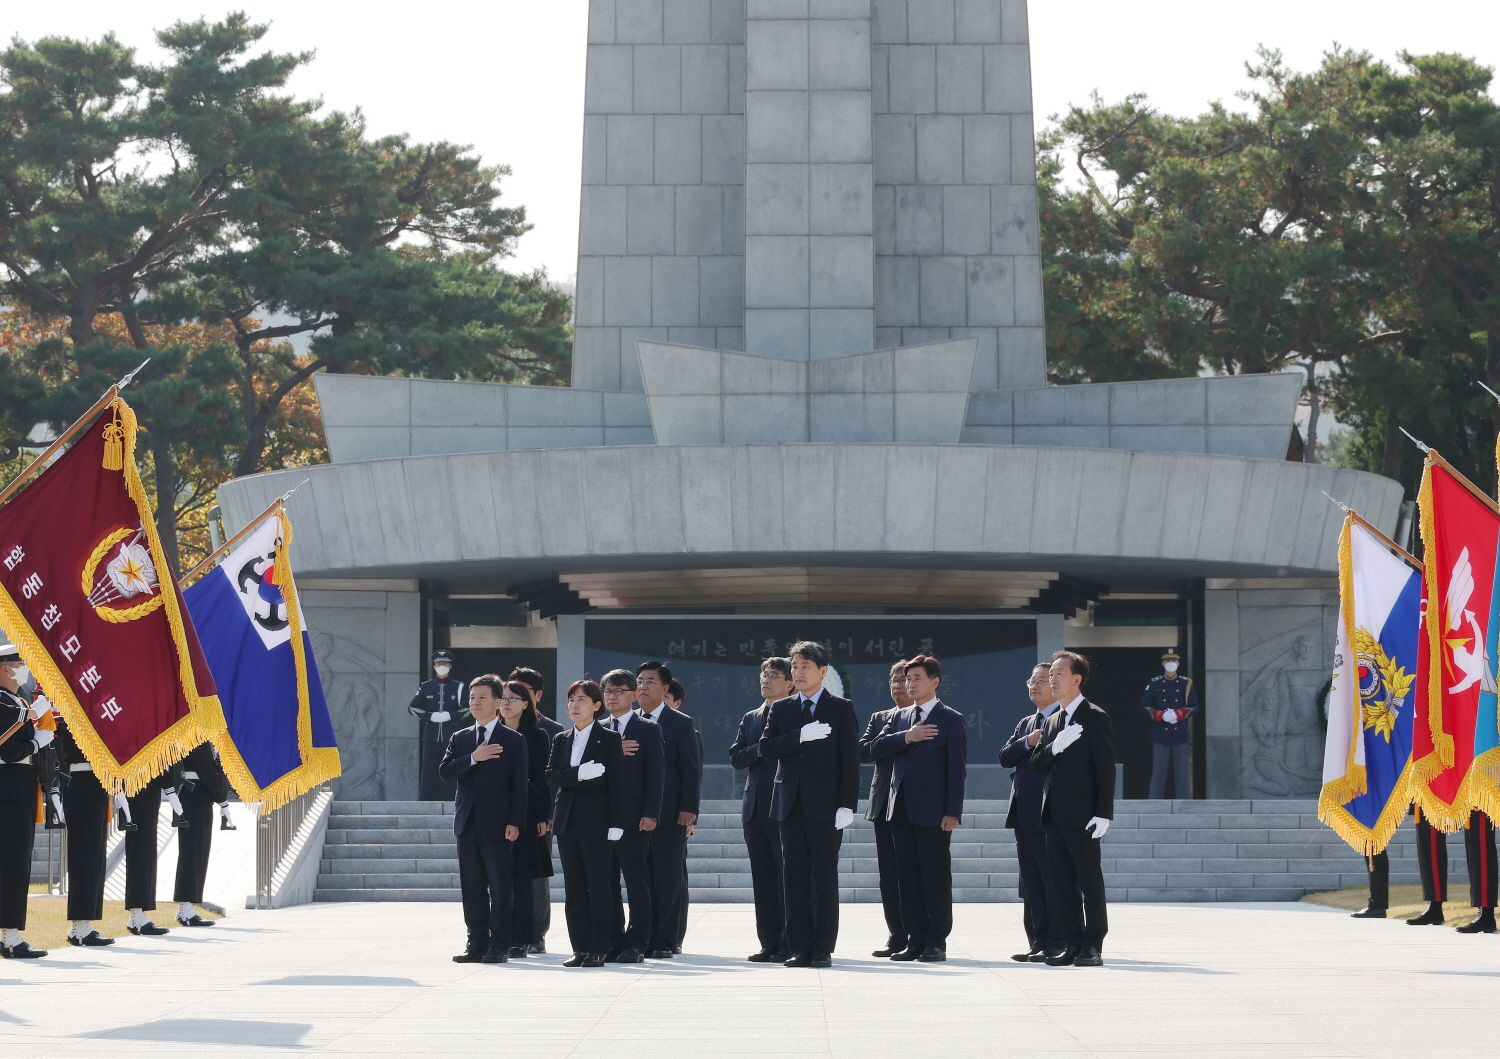 이주호 부총리 겸 교육부 장관은 11월 7일(월) 서울 동작구 국립현충원을 찾아 현충탑 참배를 하며 업무를 시작했다.